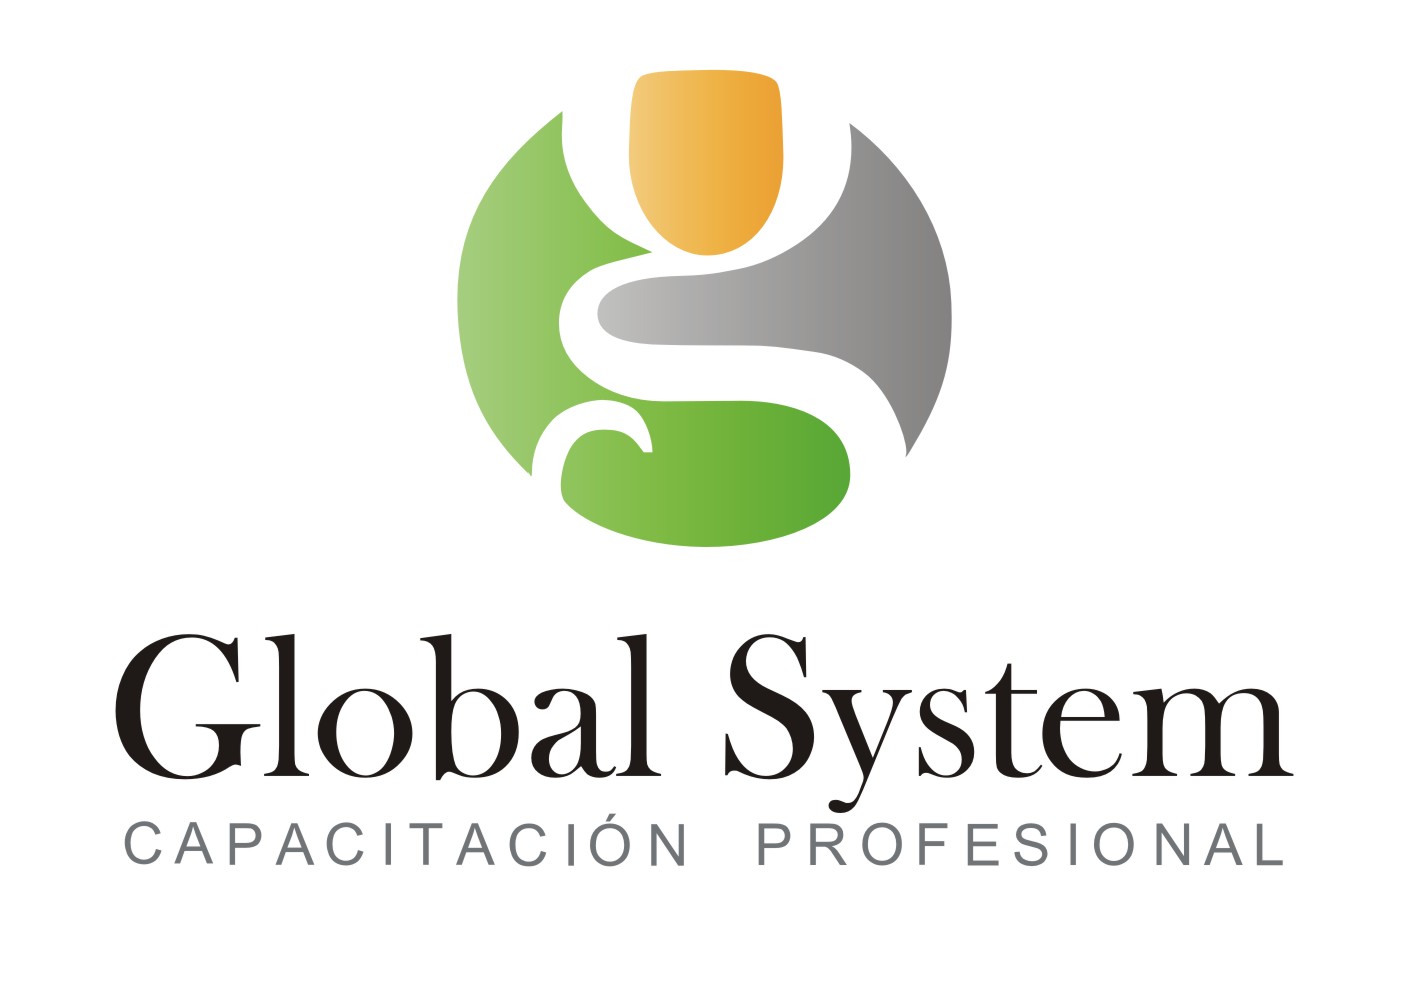 Centro de formación Global System Capacitación Profesional 